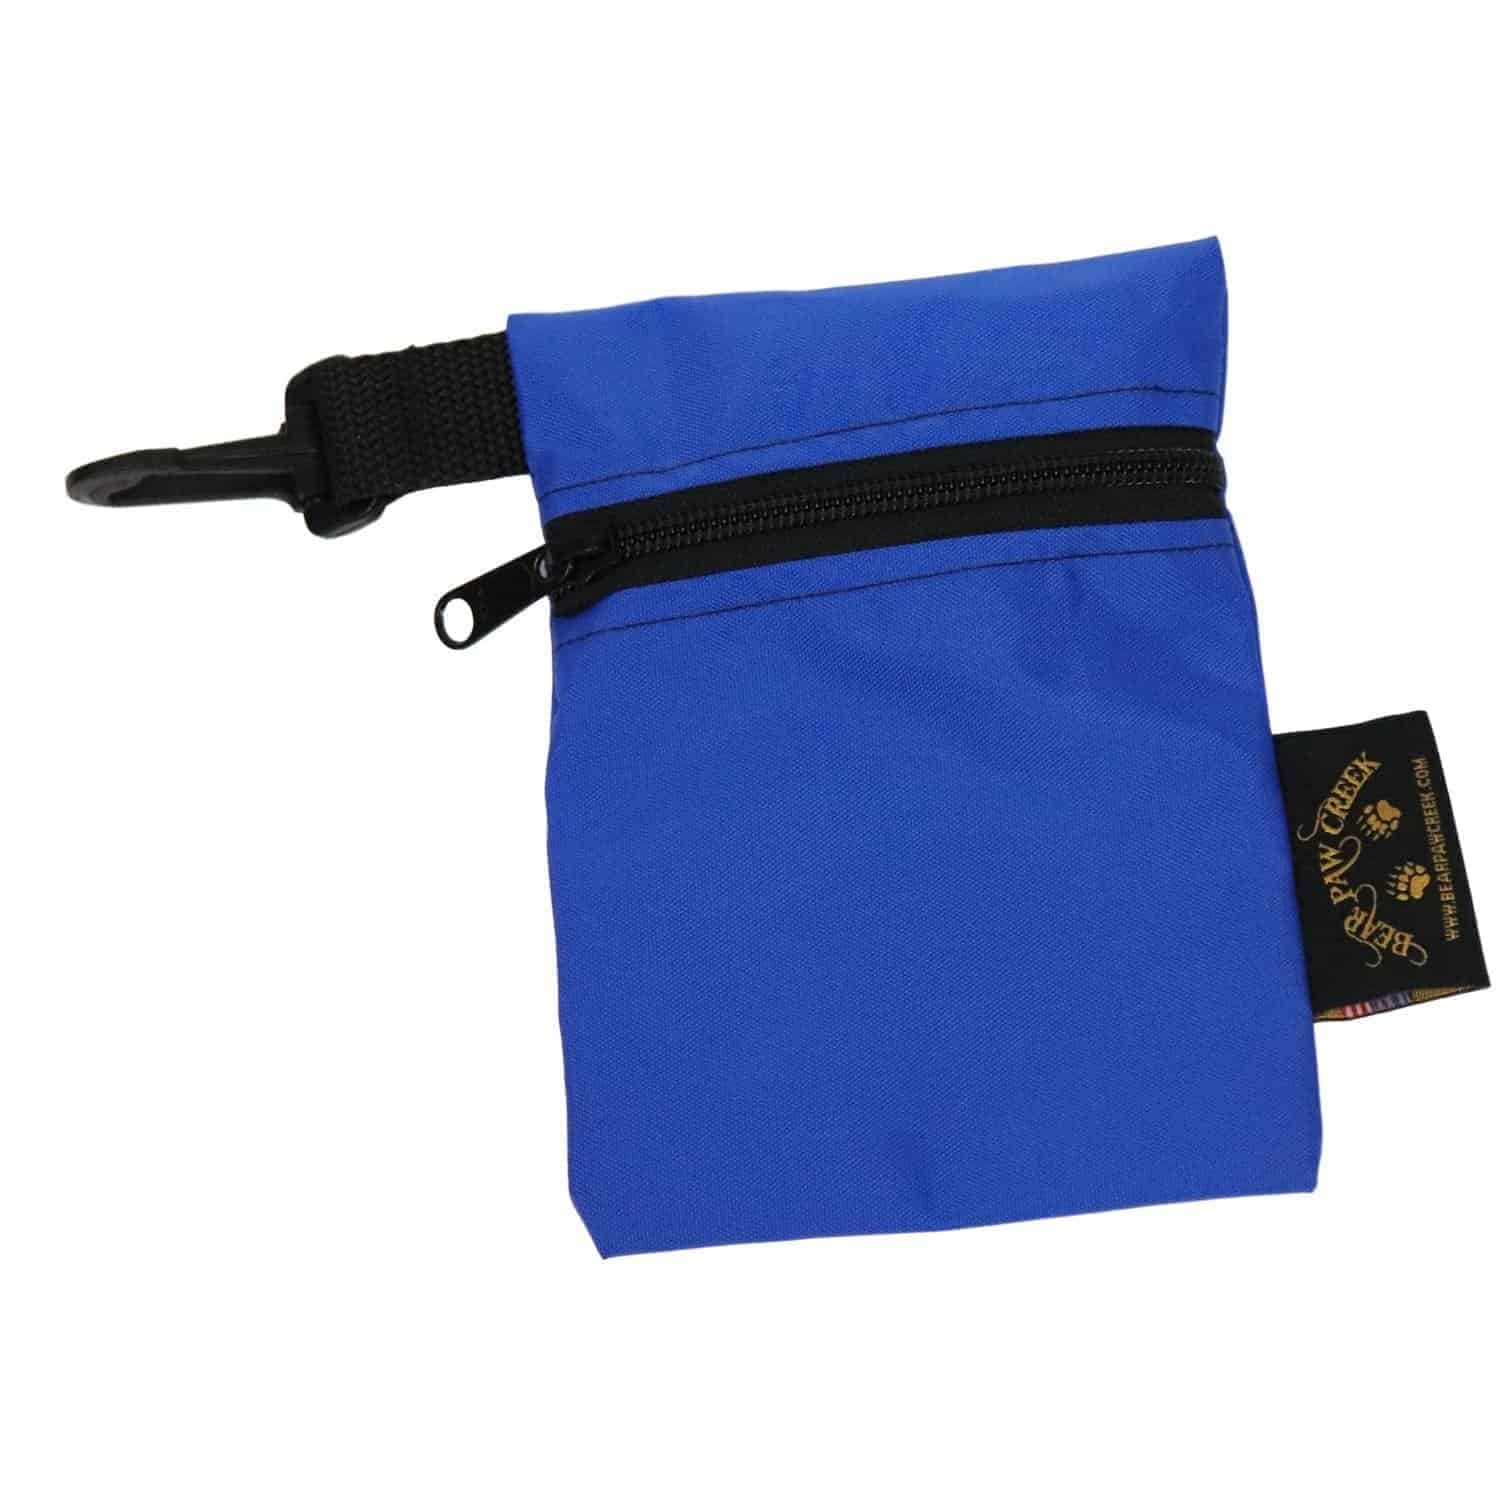 Contrato Actuación Azul Versatile Zipper Bags For Puzzle Storage or First Aid Kits